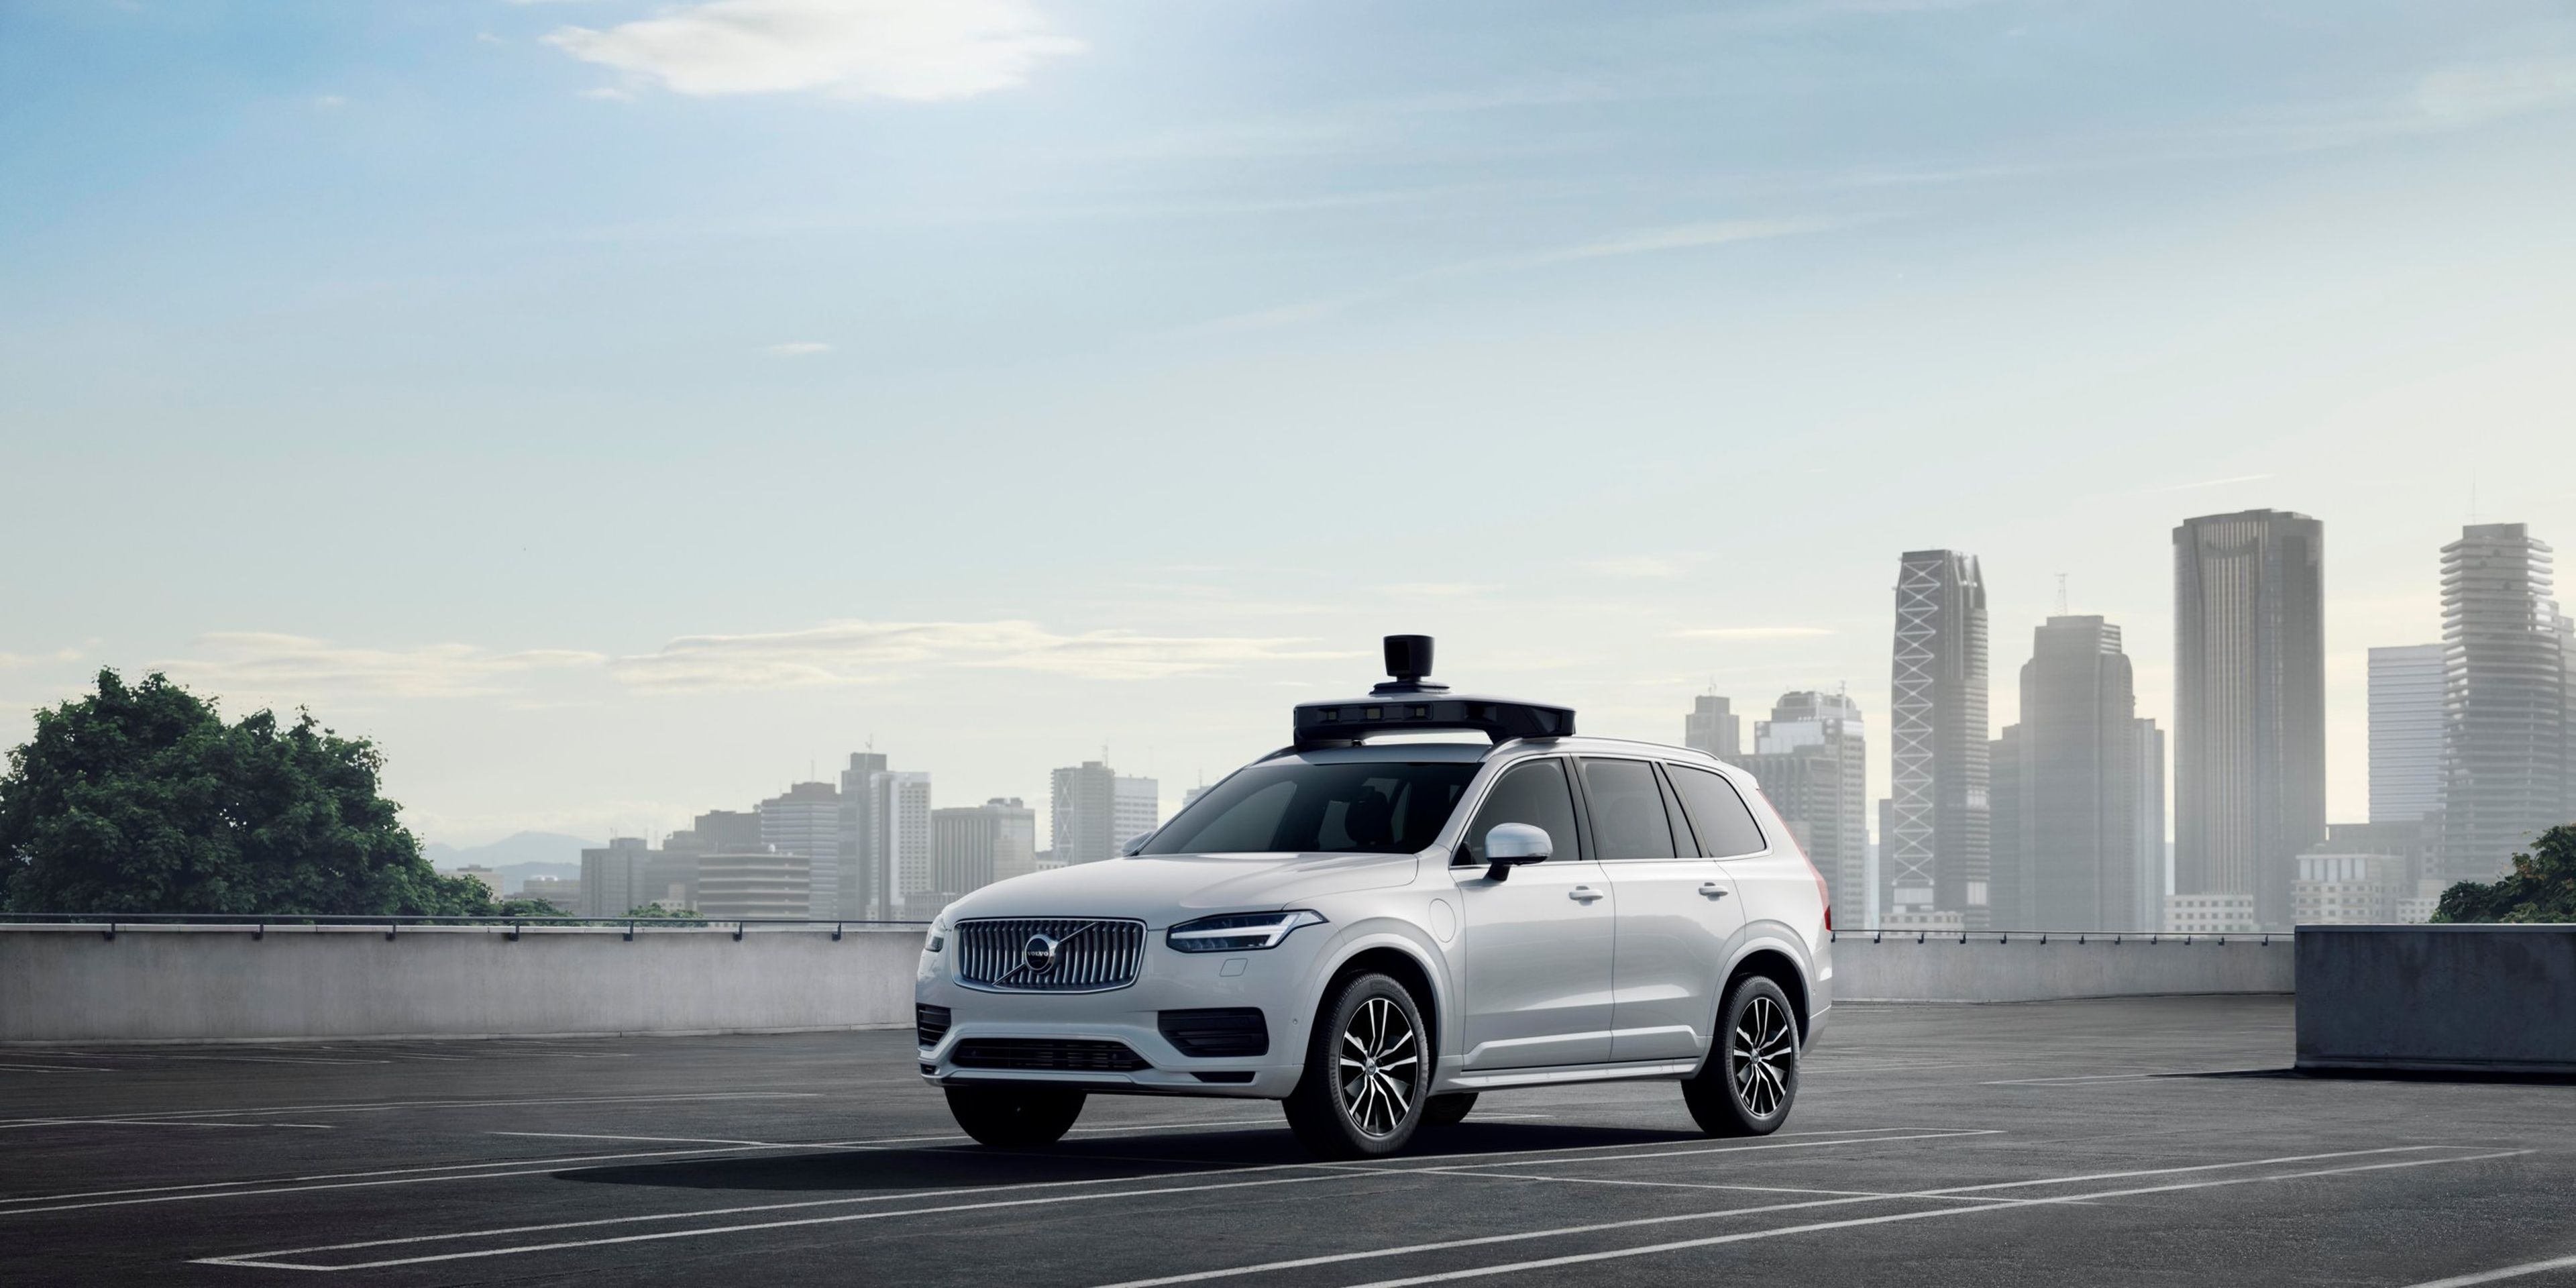 Una imagen promocional de la tecnología de coches autónomos de Uber.